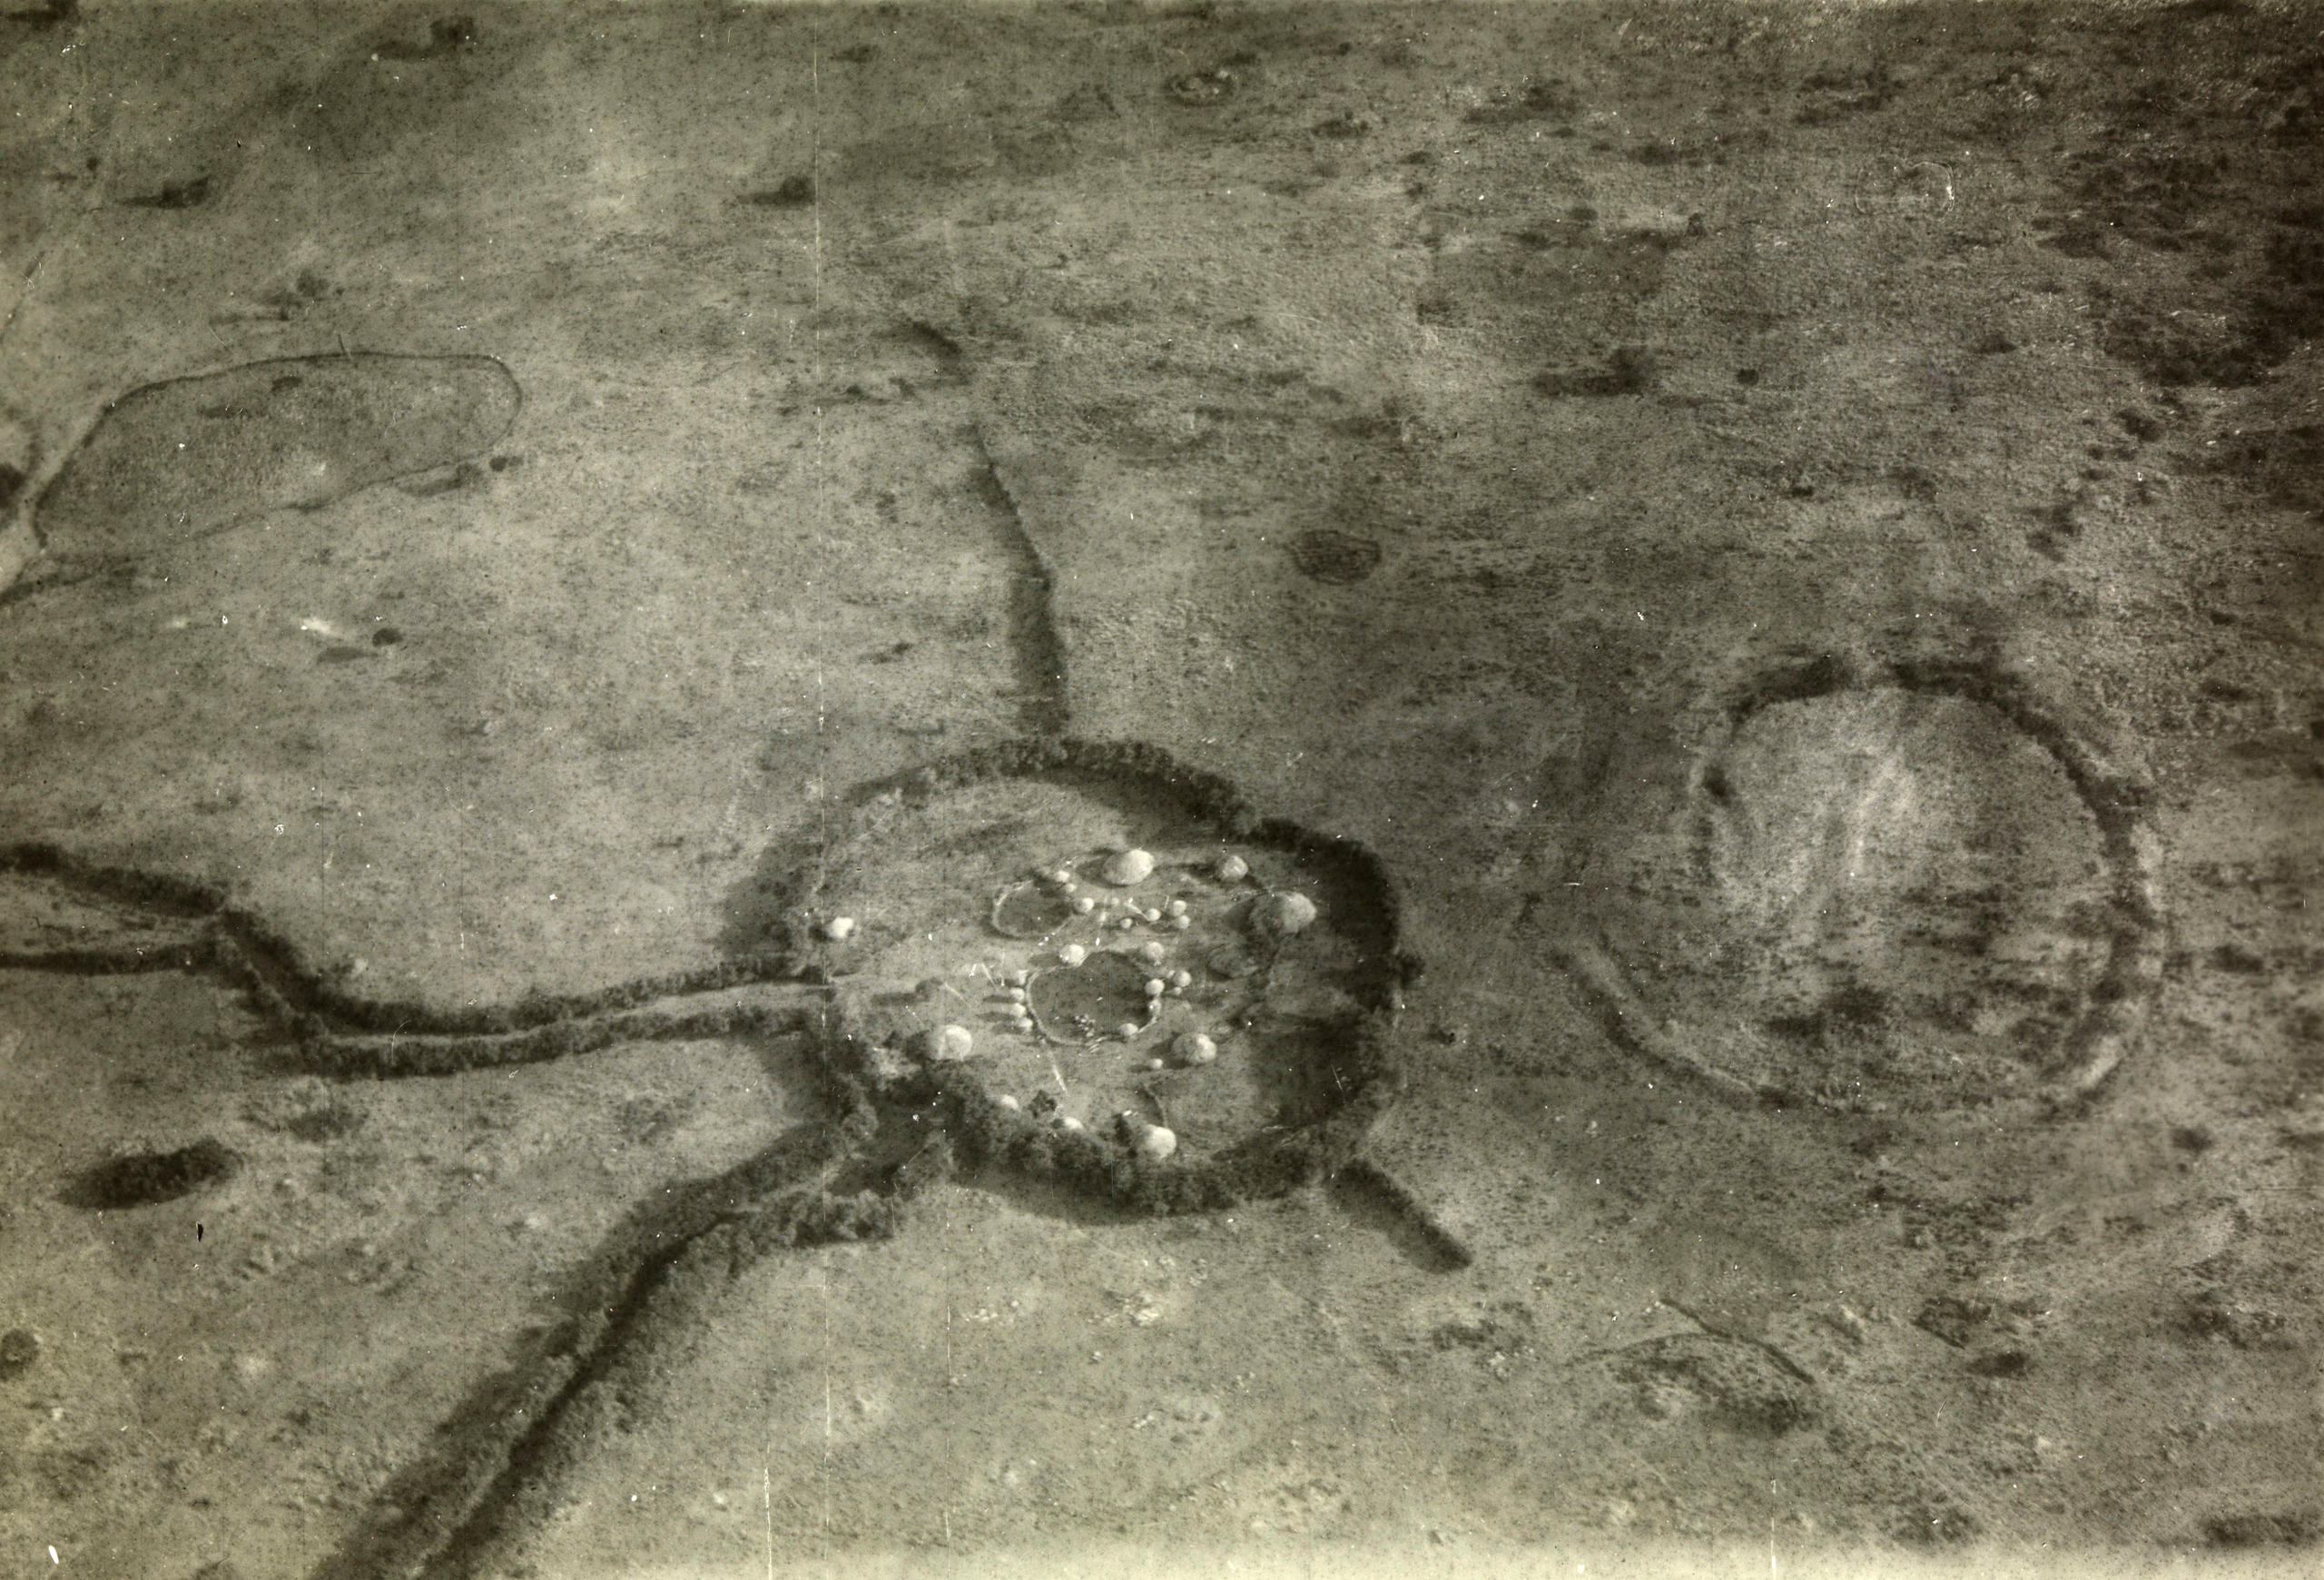 Жилой поселок в регионе озера Виктория, вид с воздуха, 1926/27 гг.